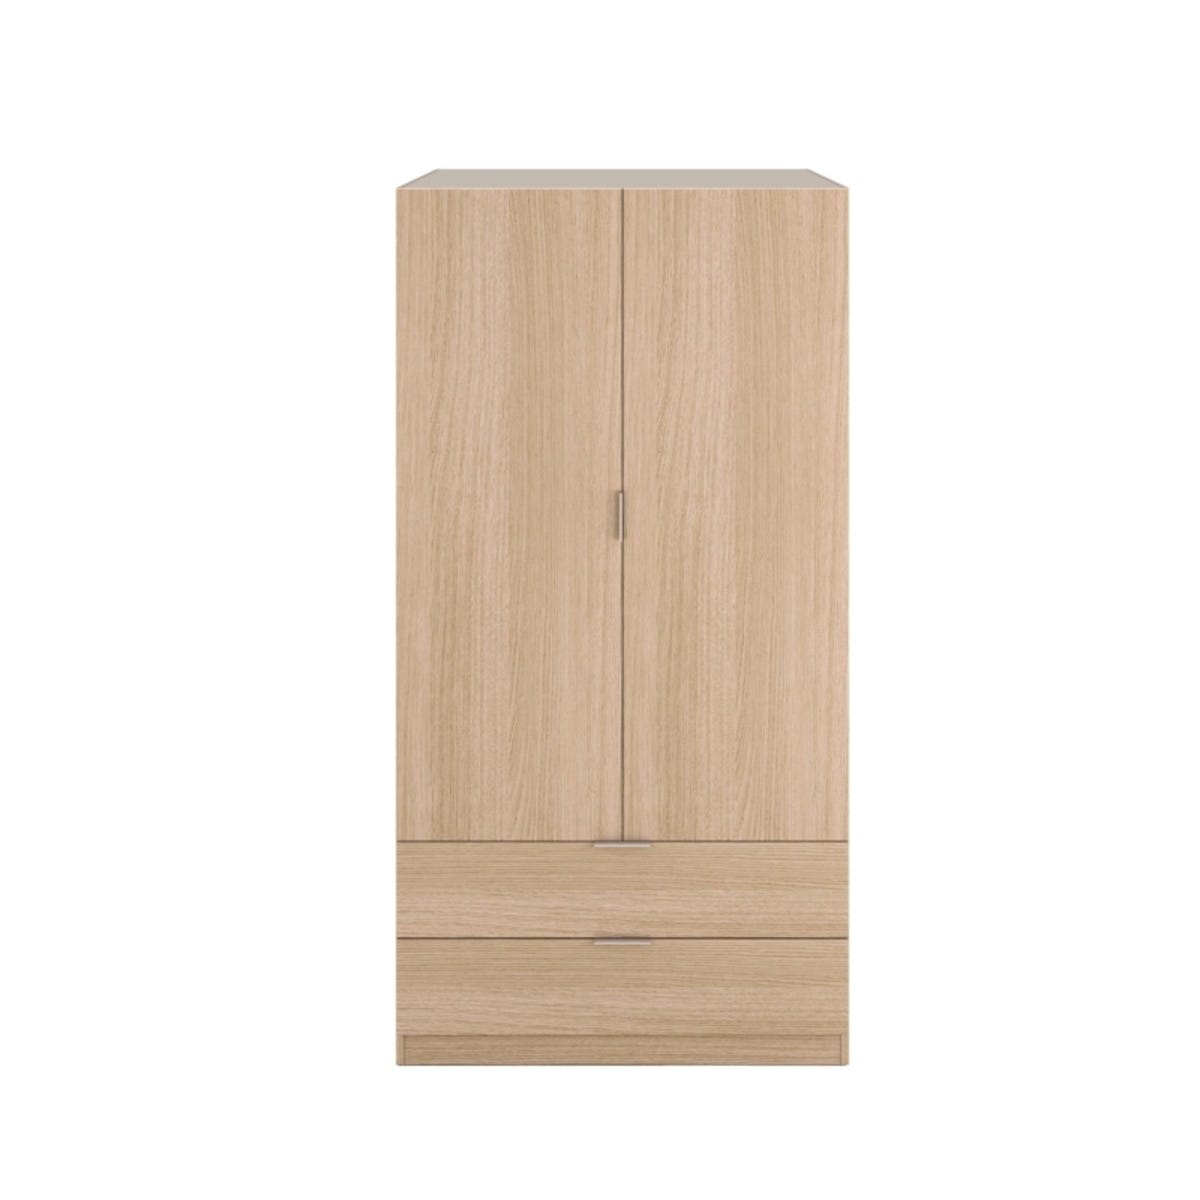 Armario de 2 puertas corredizas, acabado efecto madera, 180 cm